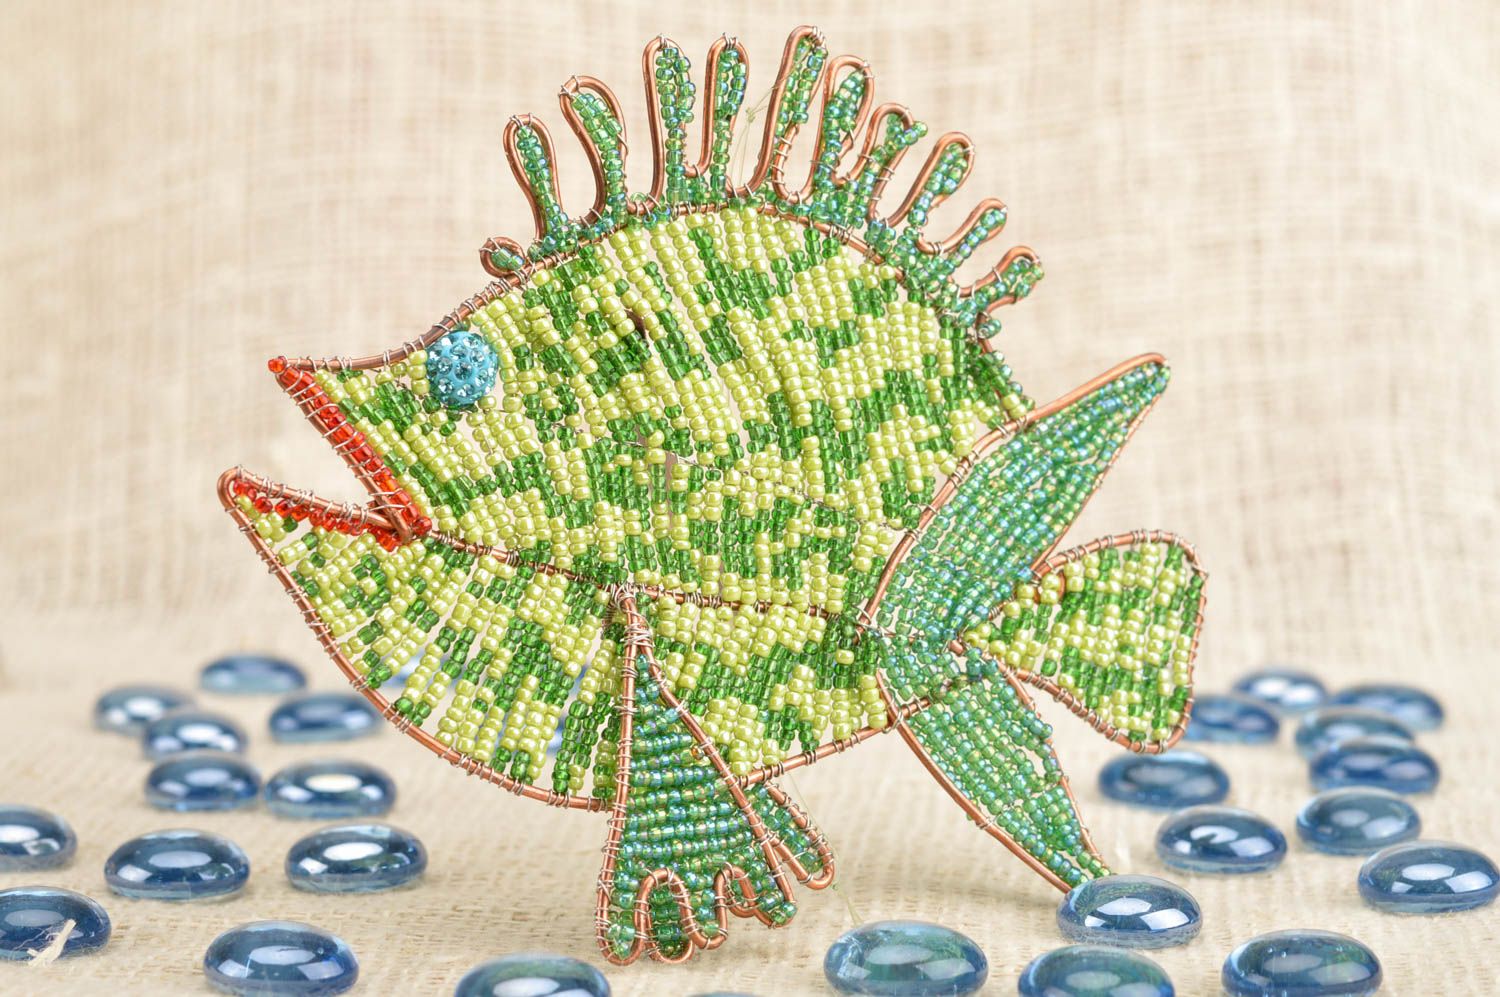 Интерьерная подвеска из бисера рыбка зеленая красивая небольшая ручной работы фото 1